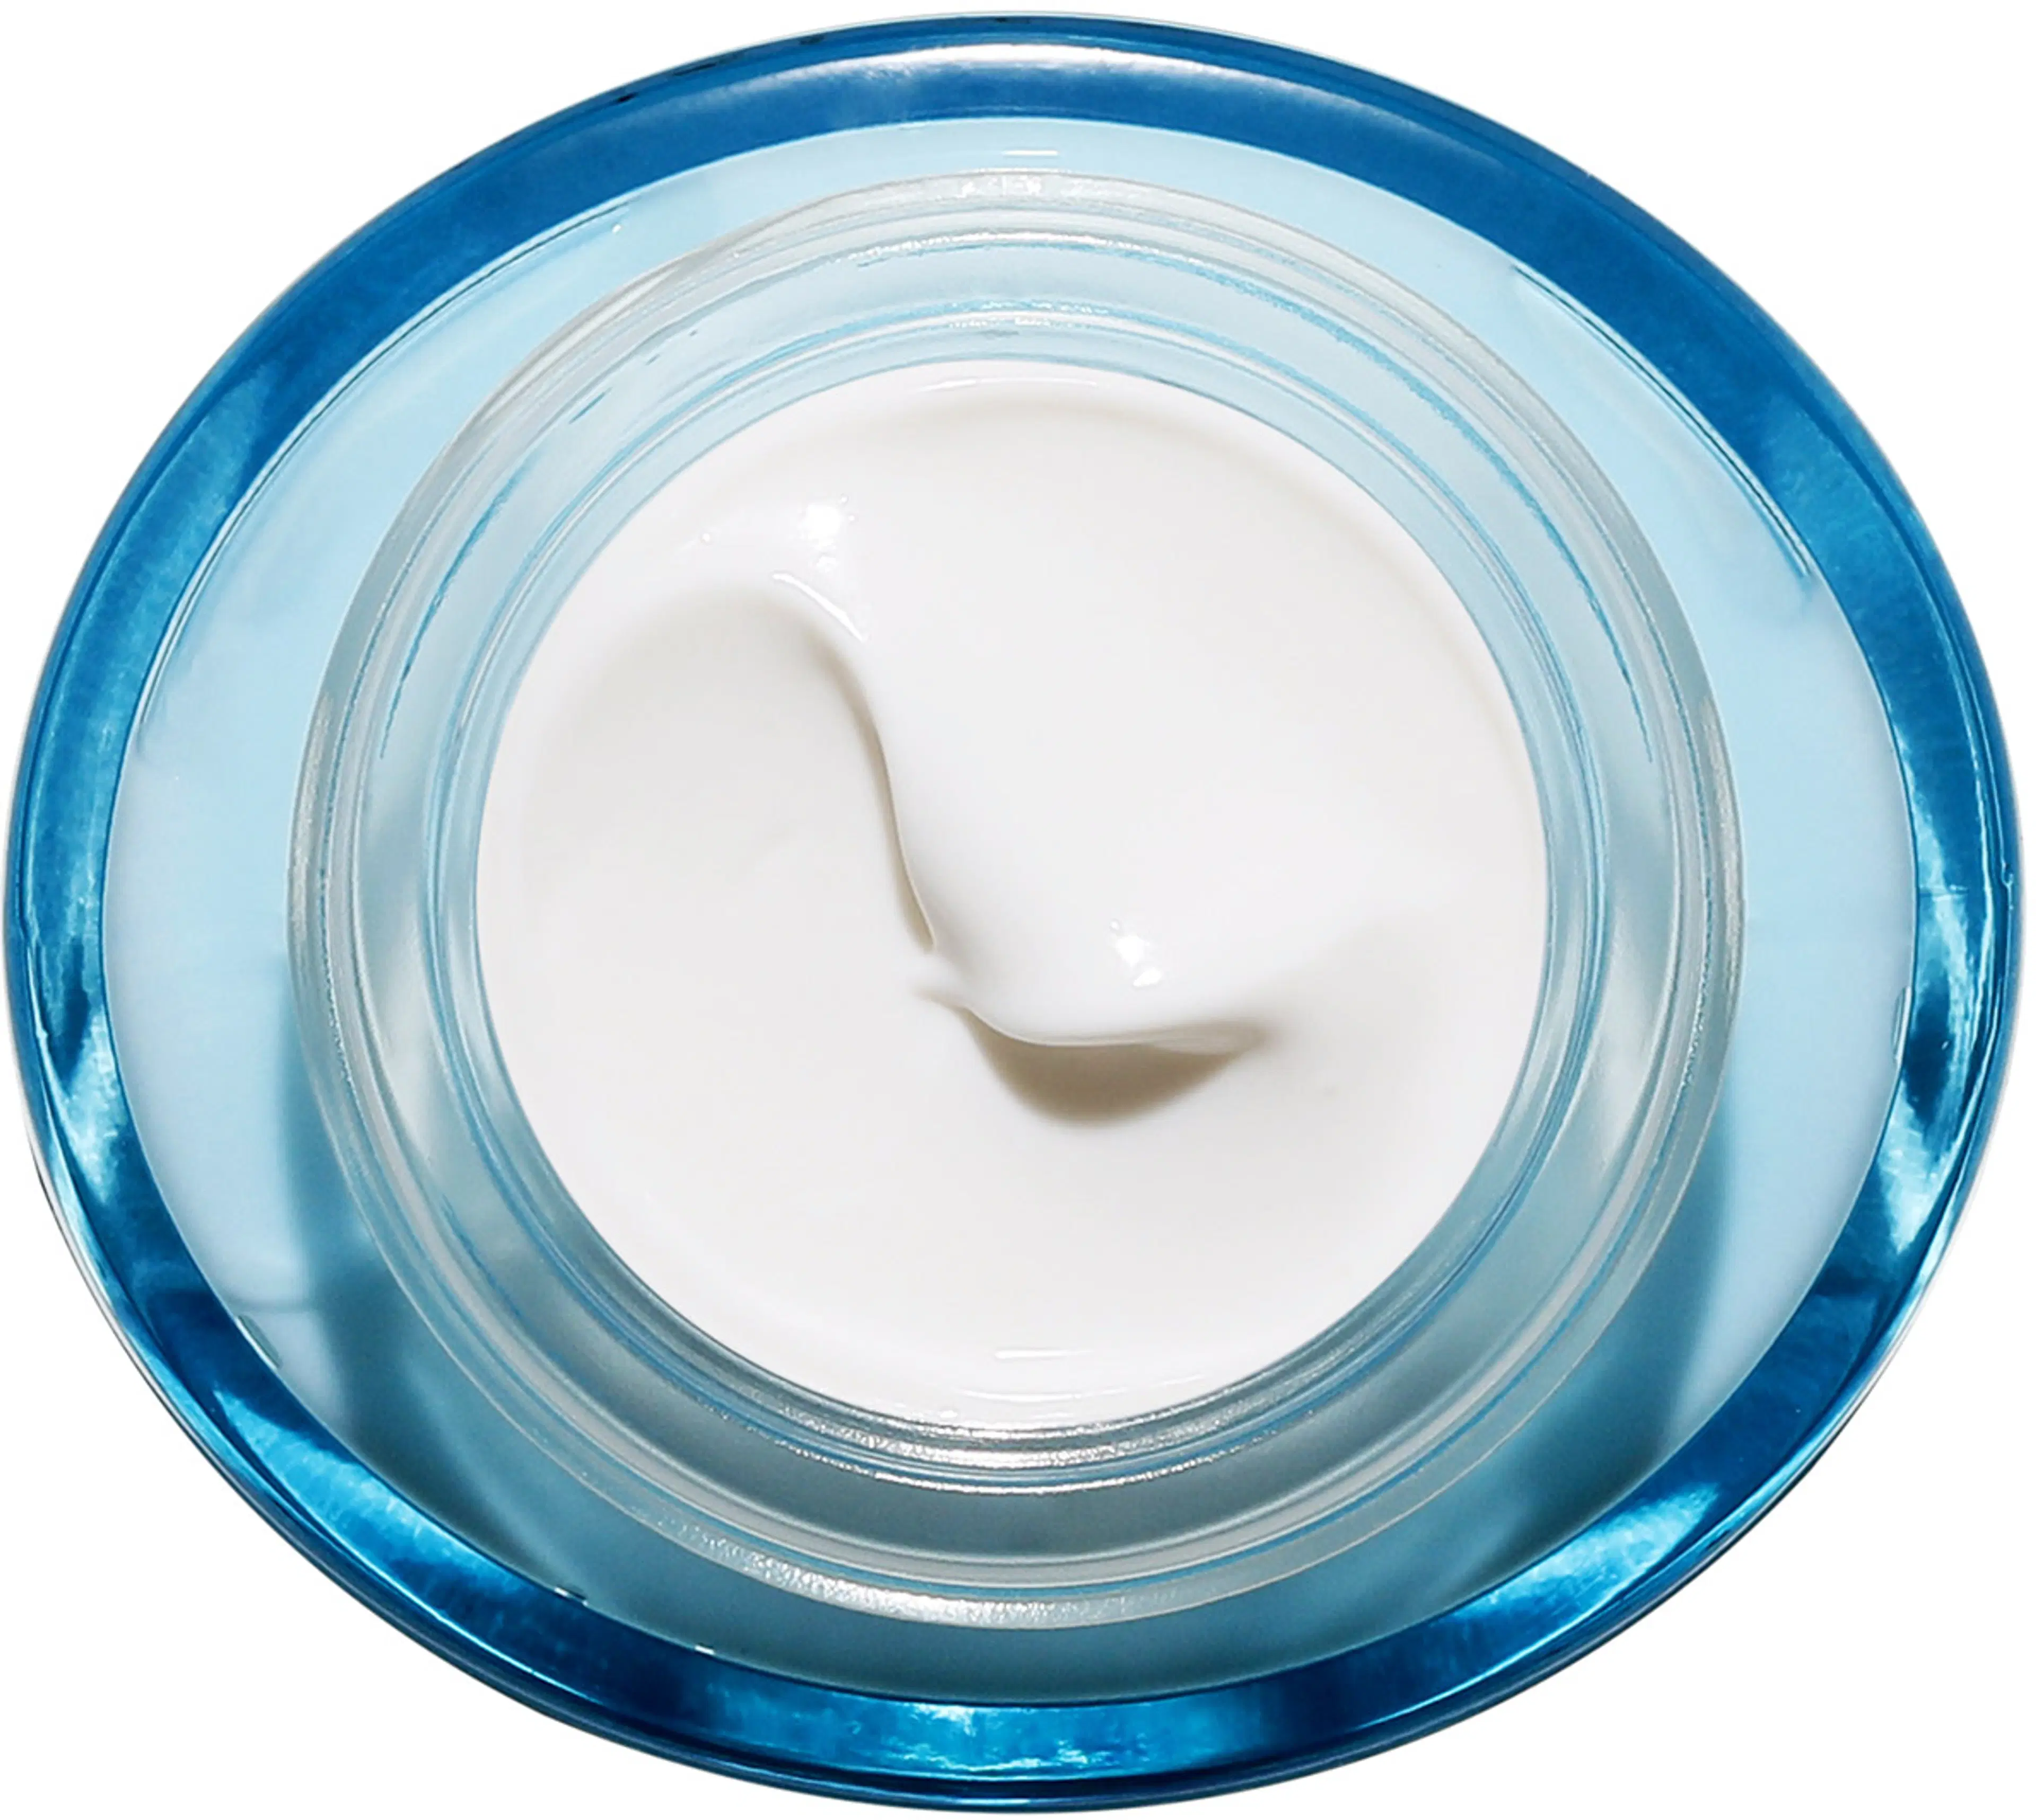 Clarins Hydra-Essentiel [HA²] SPF 15 Silky Cream päivävoide 50 ml